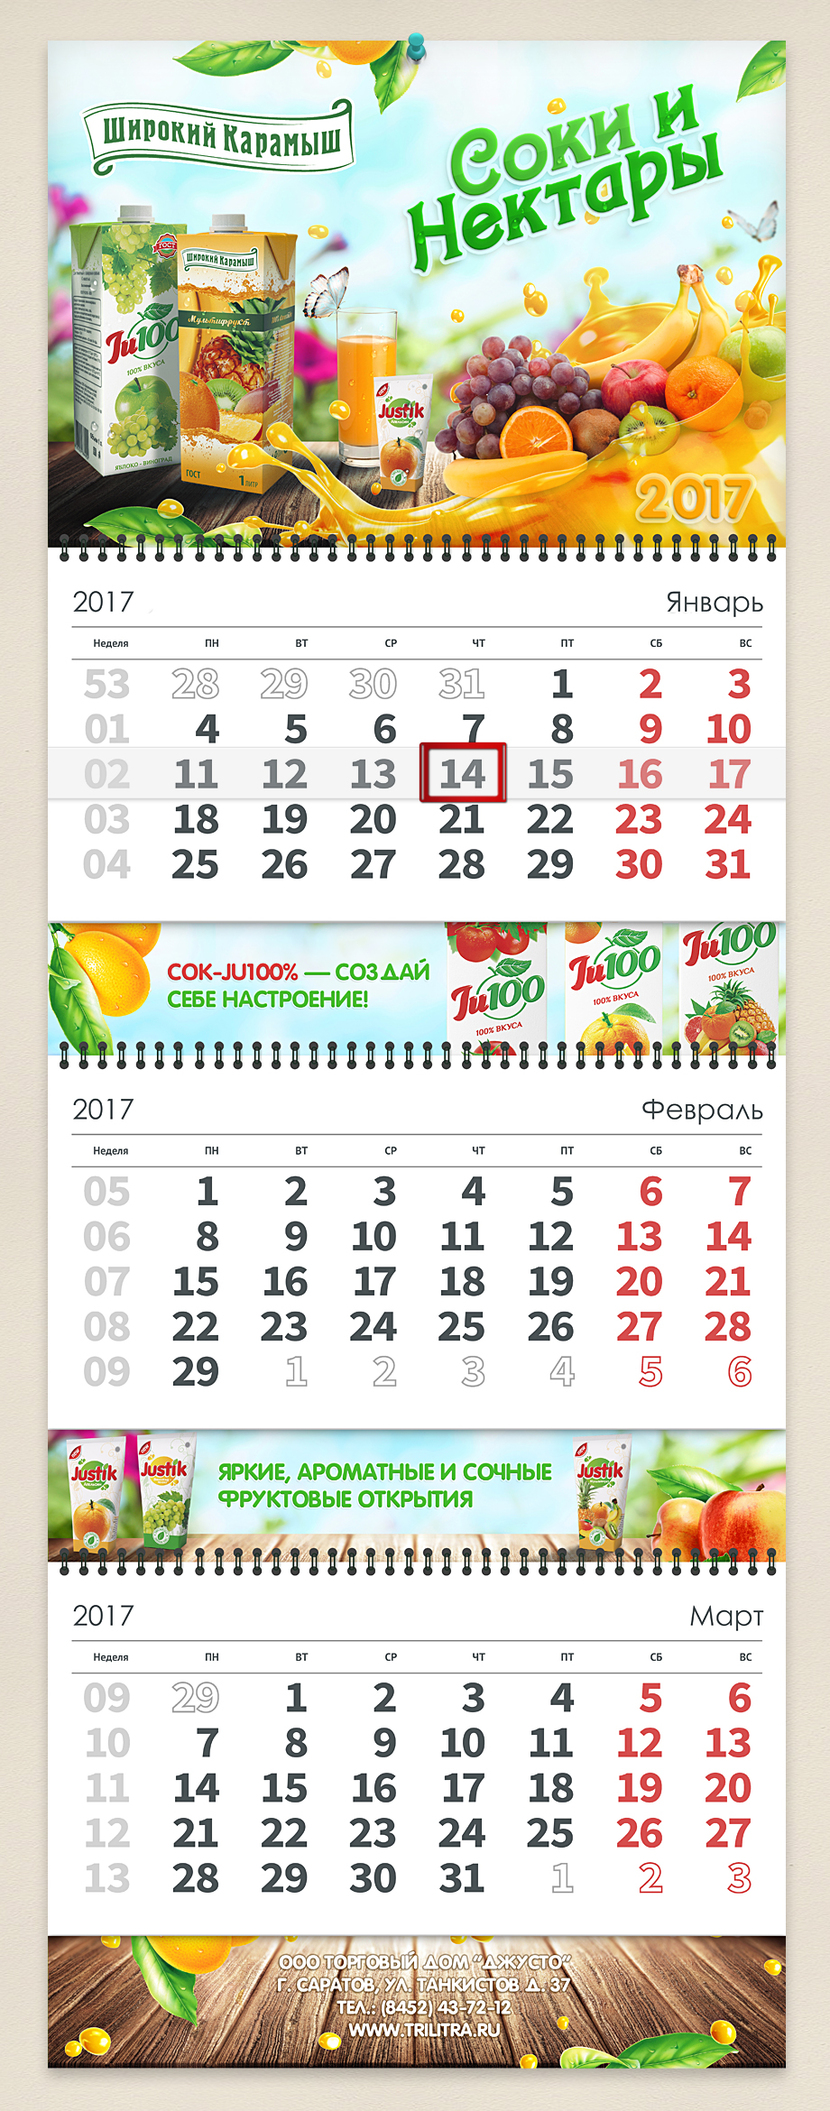 Доработал - Дизайн квартального календаря 2017г. для ООО ТК ДЖУСТО (  соки "Широкий Карамыш ")